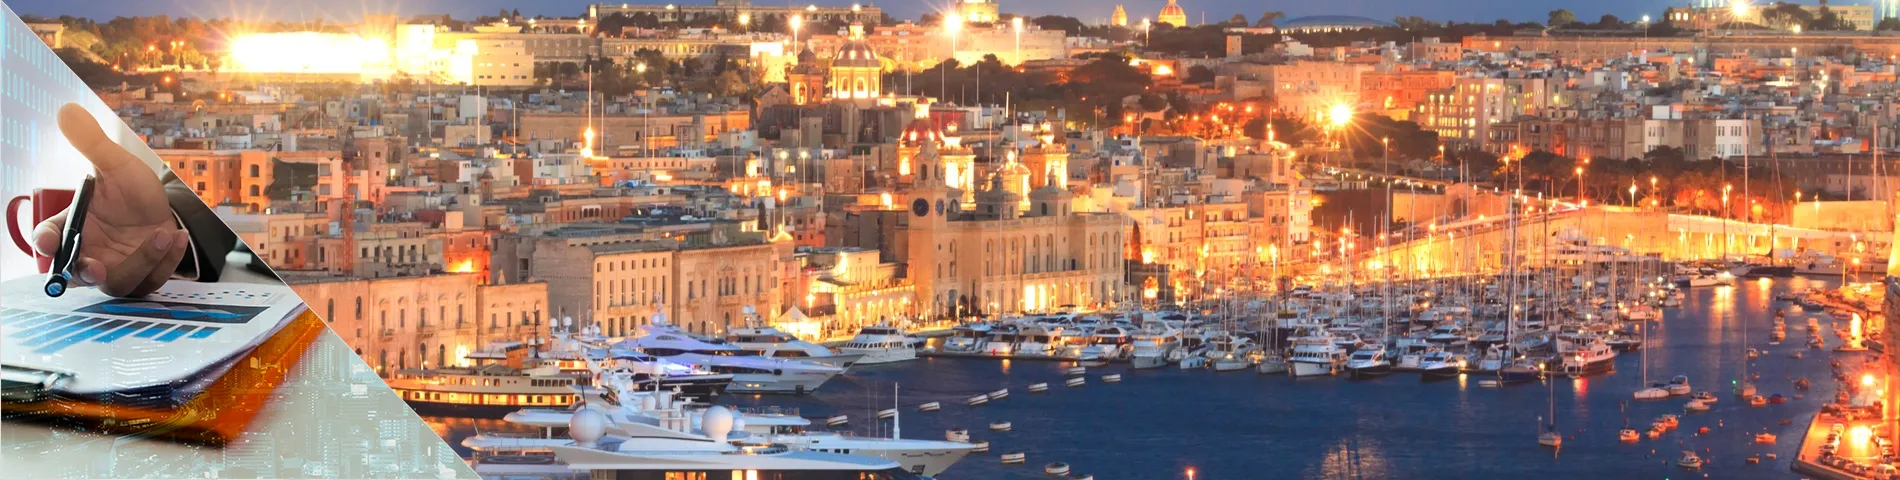 Valletta - Banking & Finance